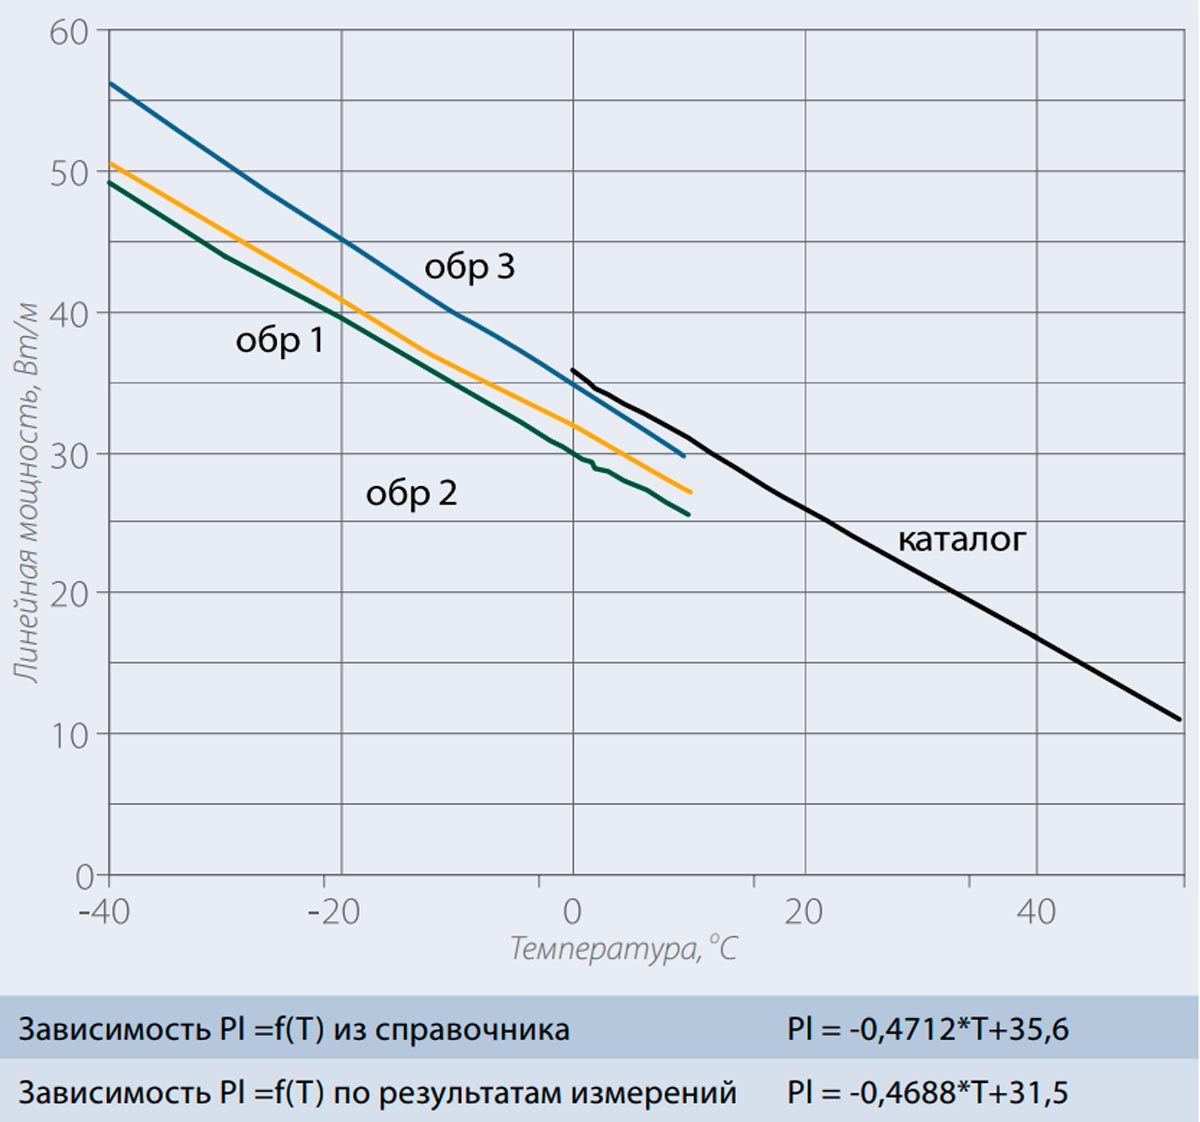 Рис. 6. Измеренные значения установившейся мощности кабеля 31ФСР2-СТ в сравнении с данными каталога